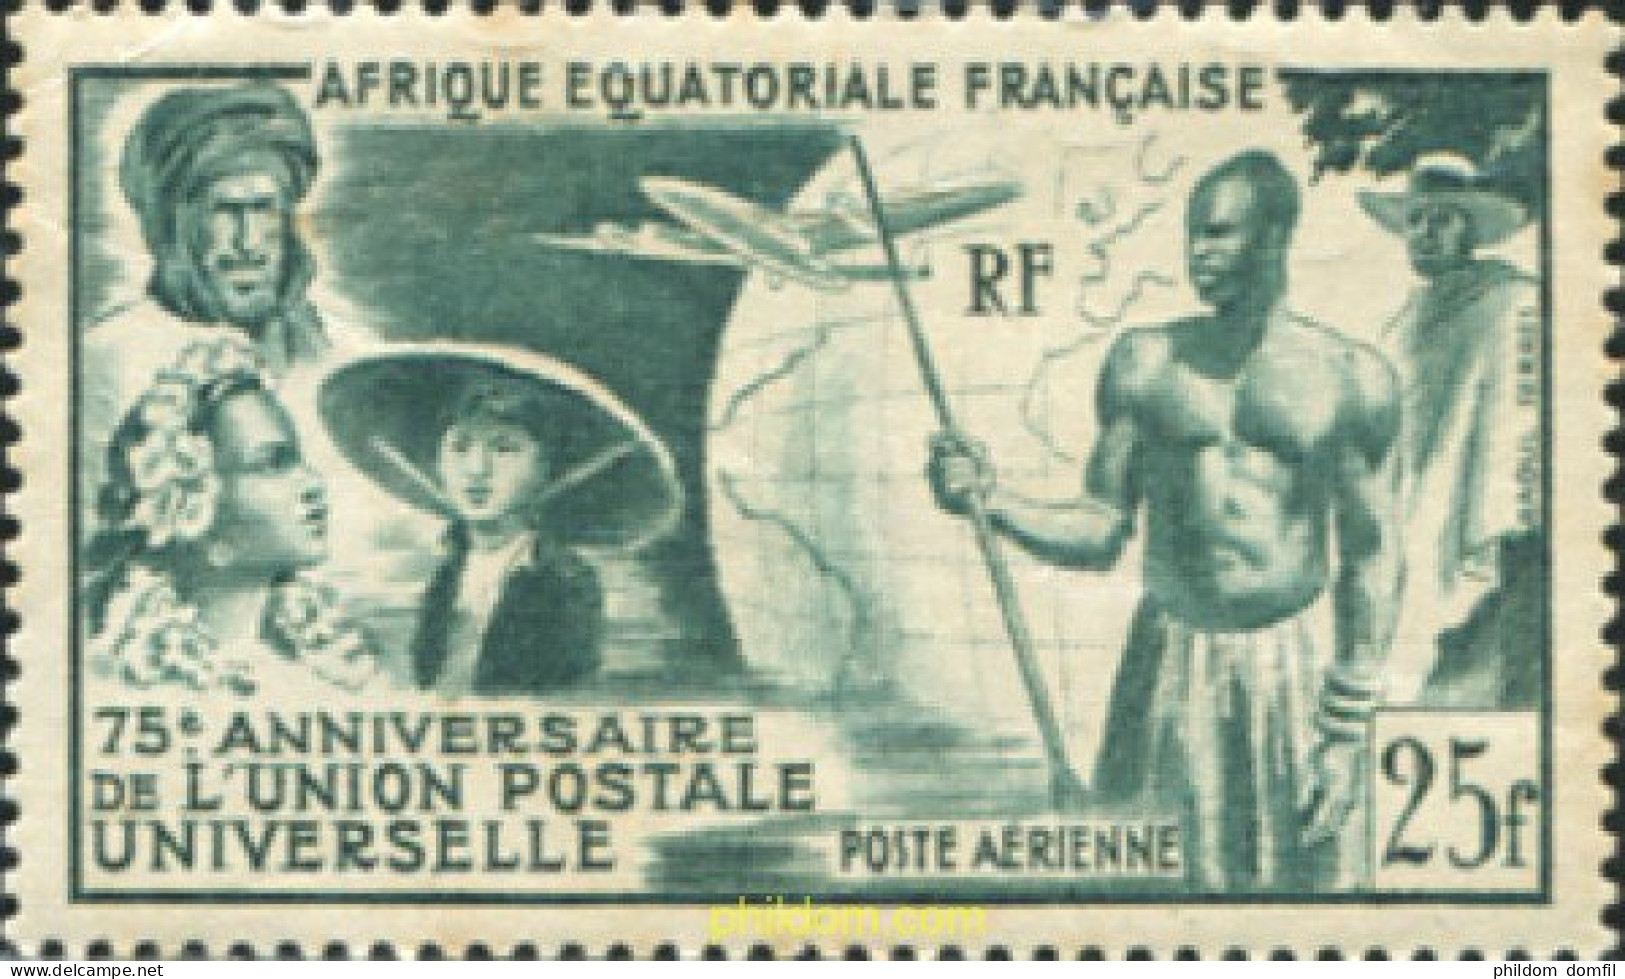 369898 MNH AFRICA ECUATORIAL FRANCESA 1949 75 ANIVERSARIO DE LA UPU - Nuovi